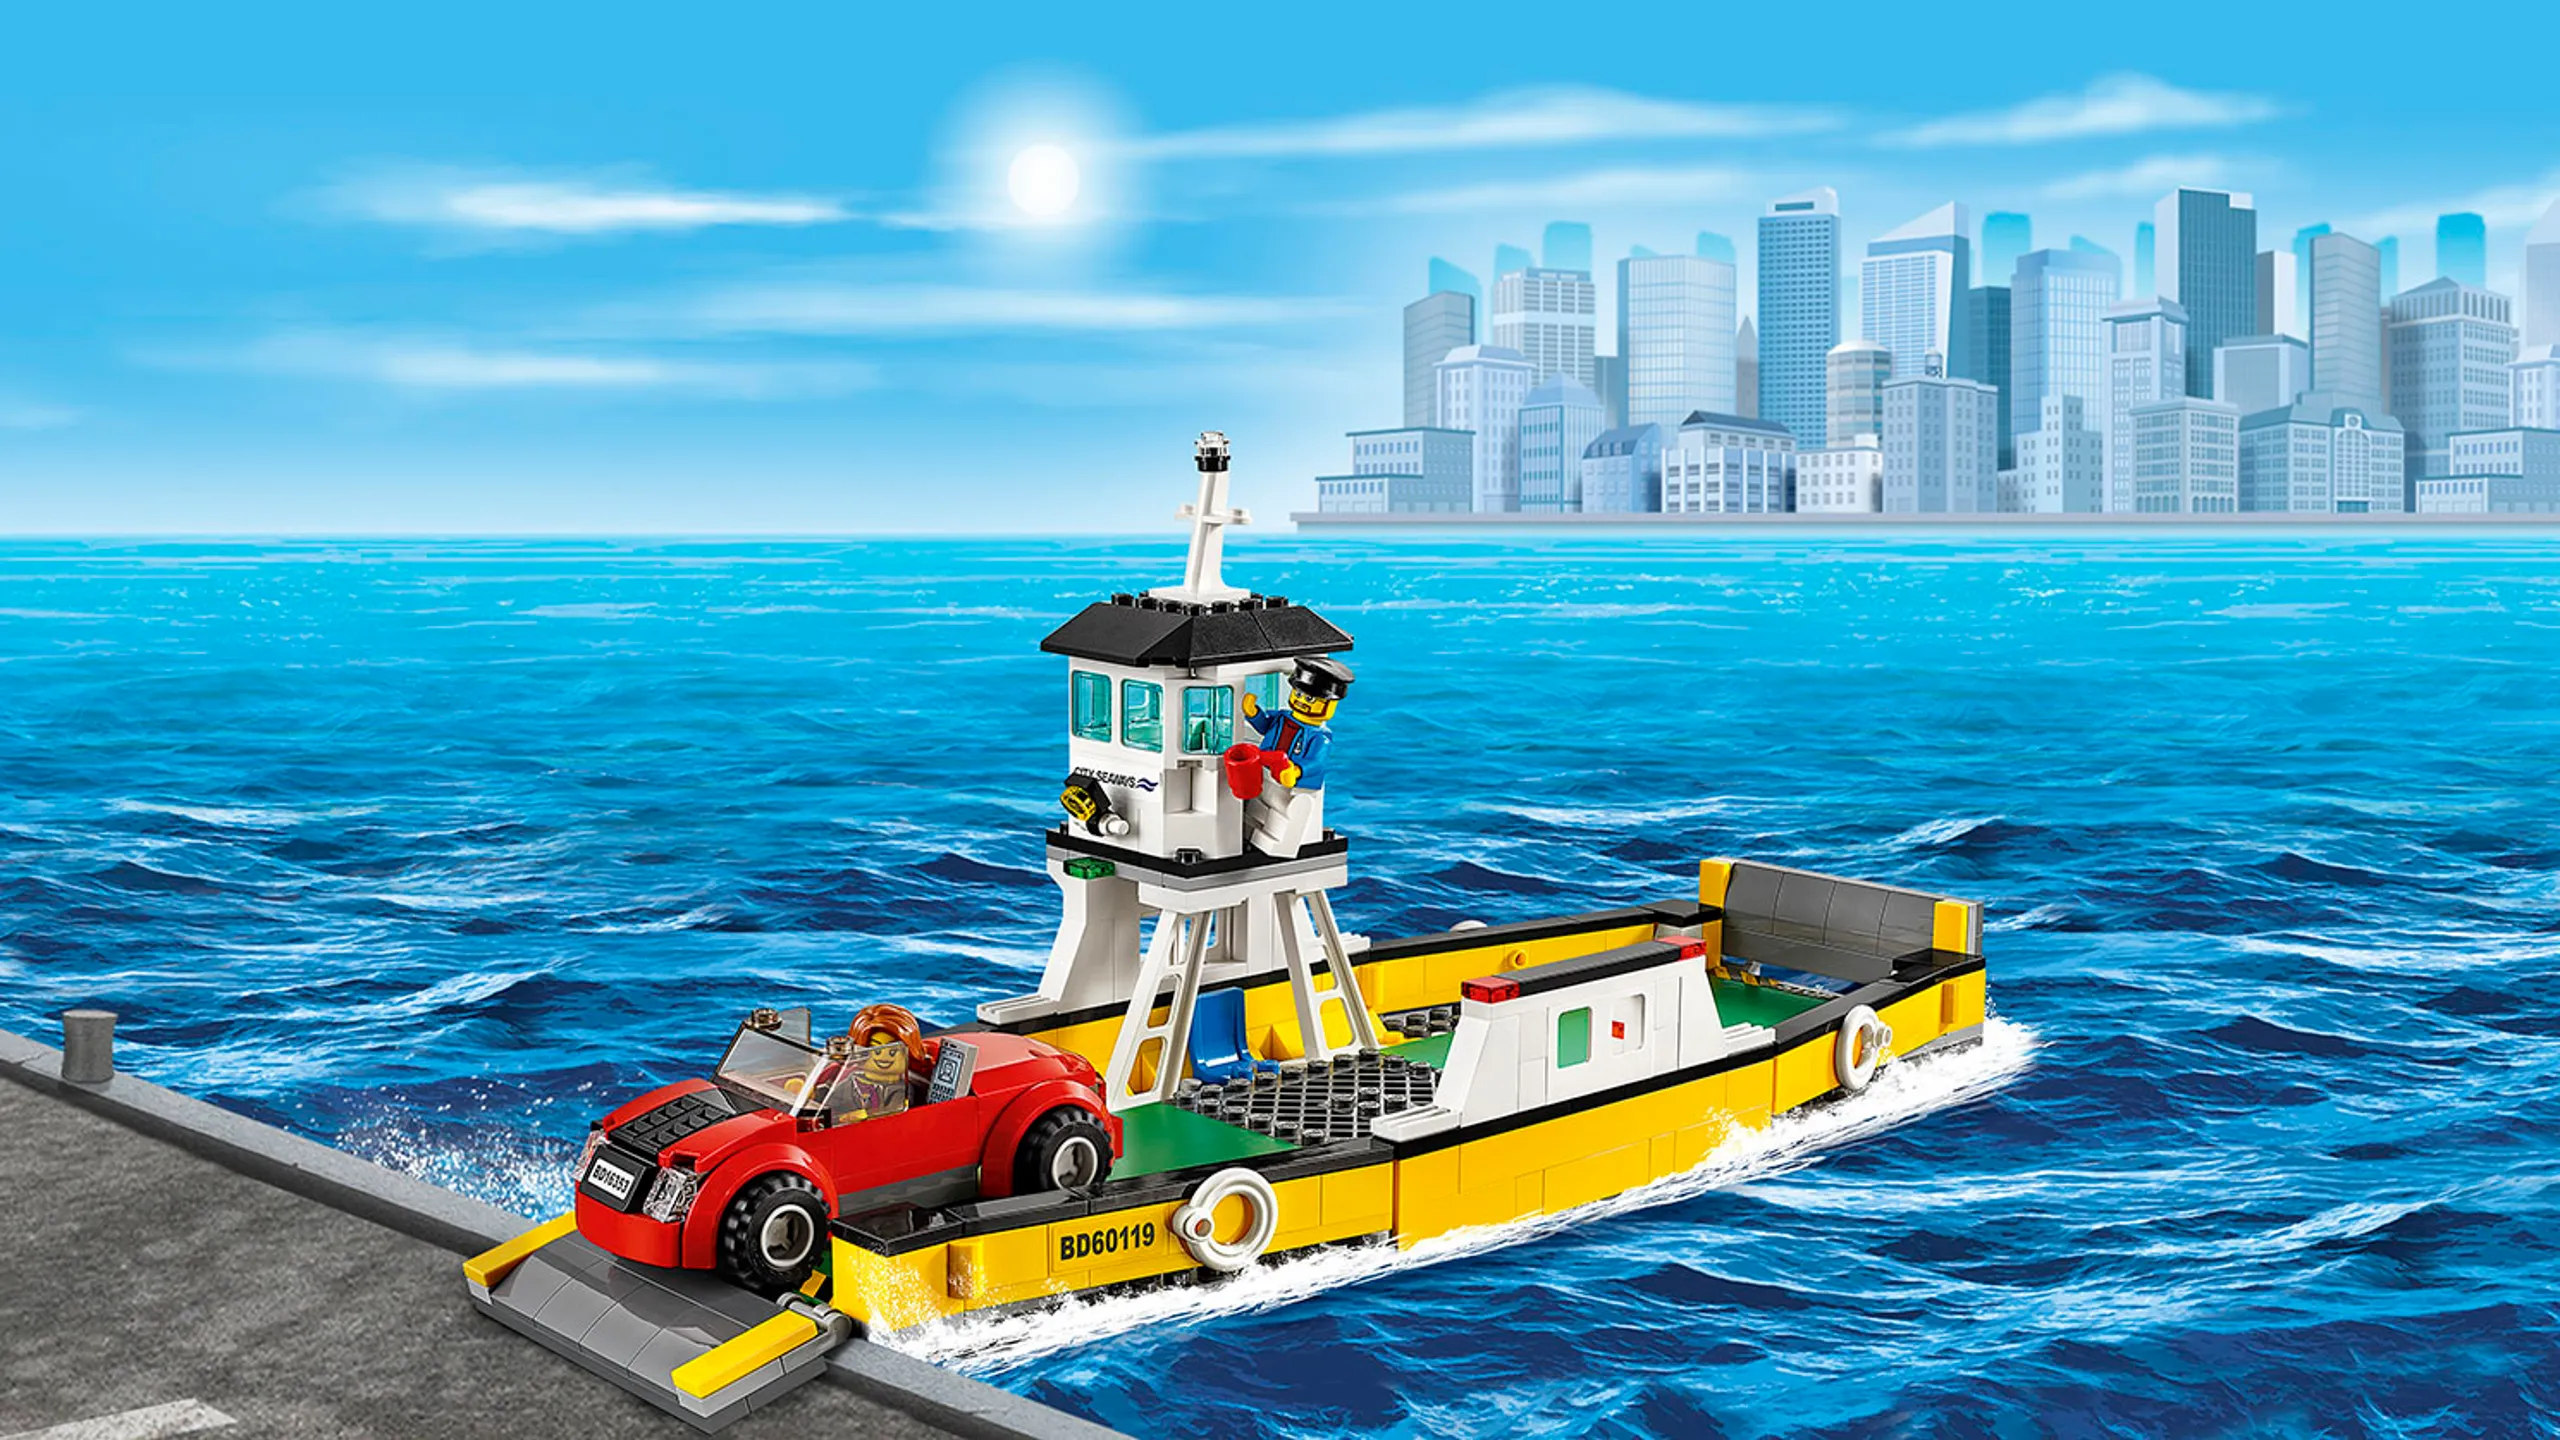 Superpojazdy LEGO City: samochód wjeżdżający na prom —Prom 60119